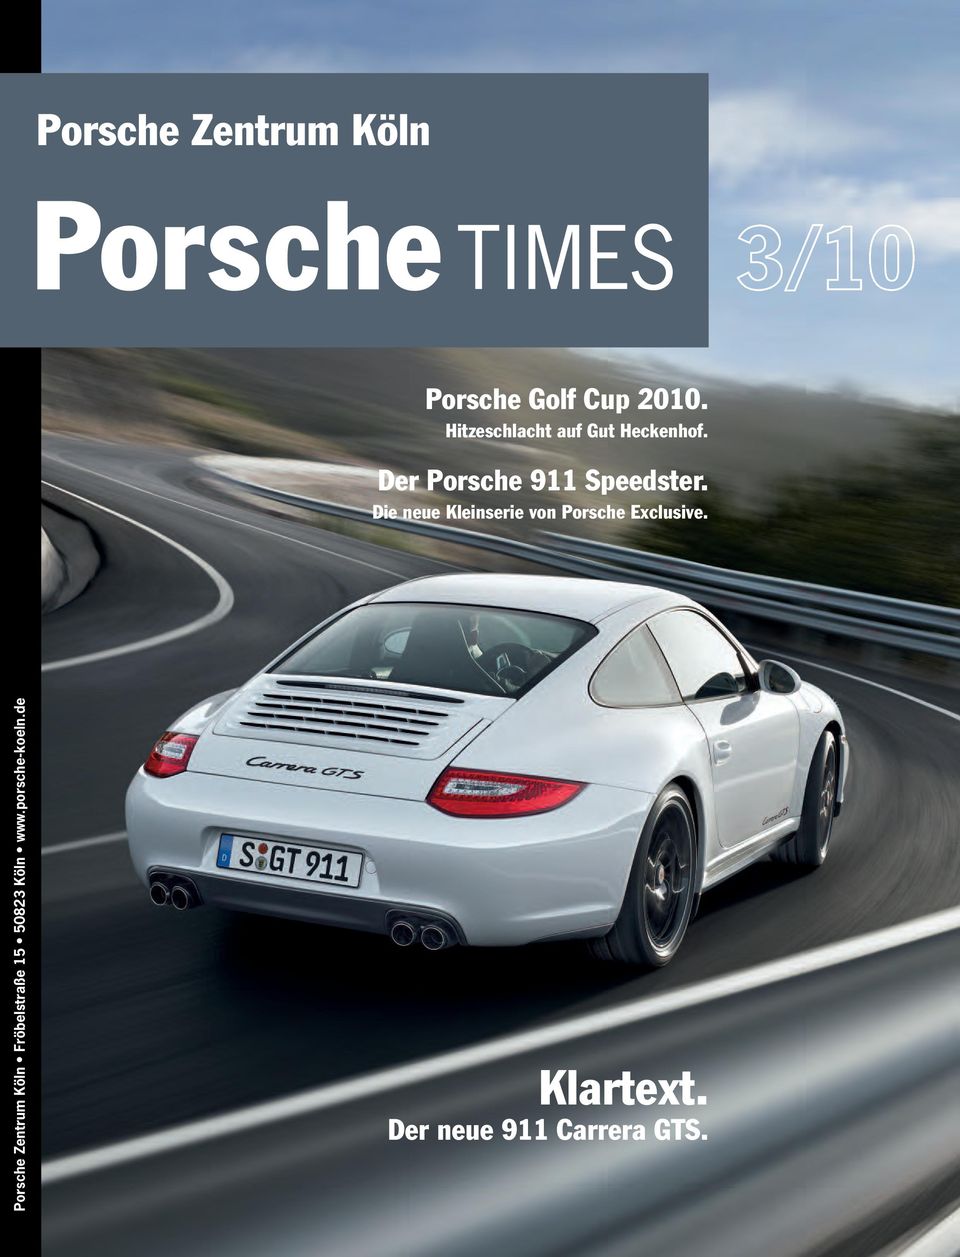 Die neue Kleinserie von Porsche Exclusive.